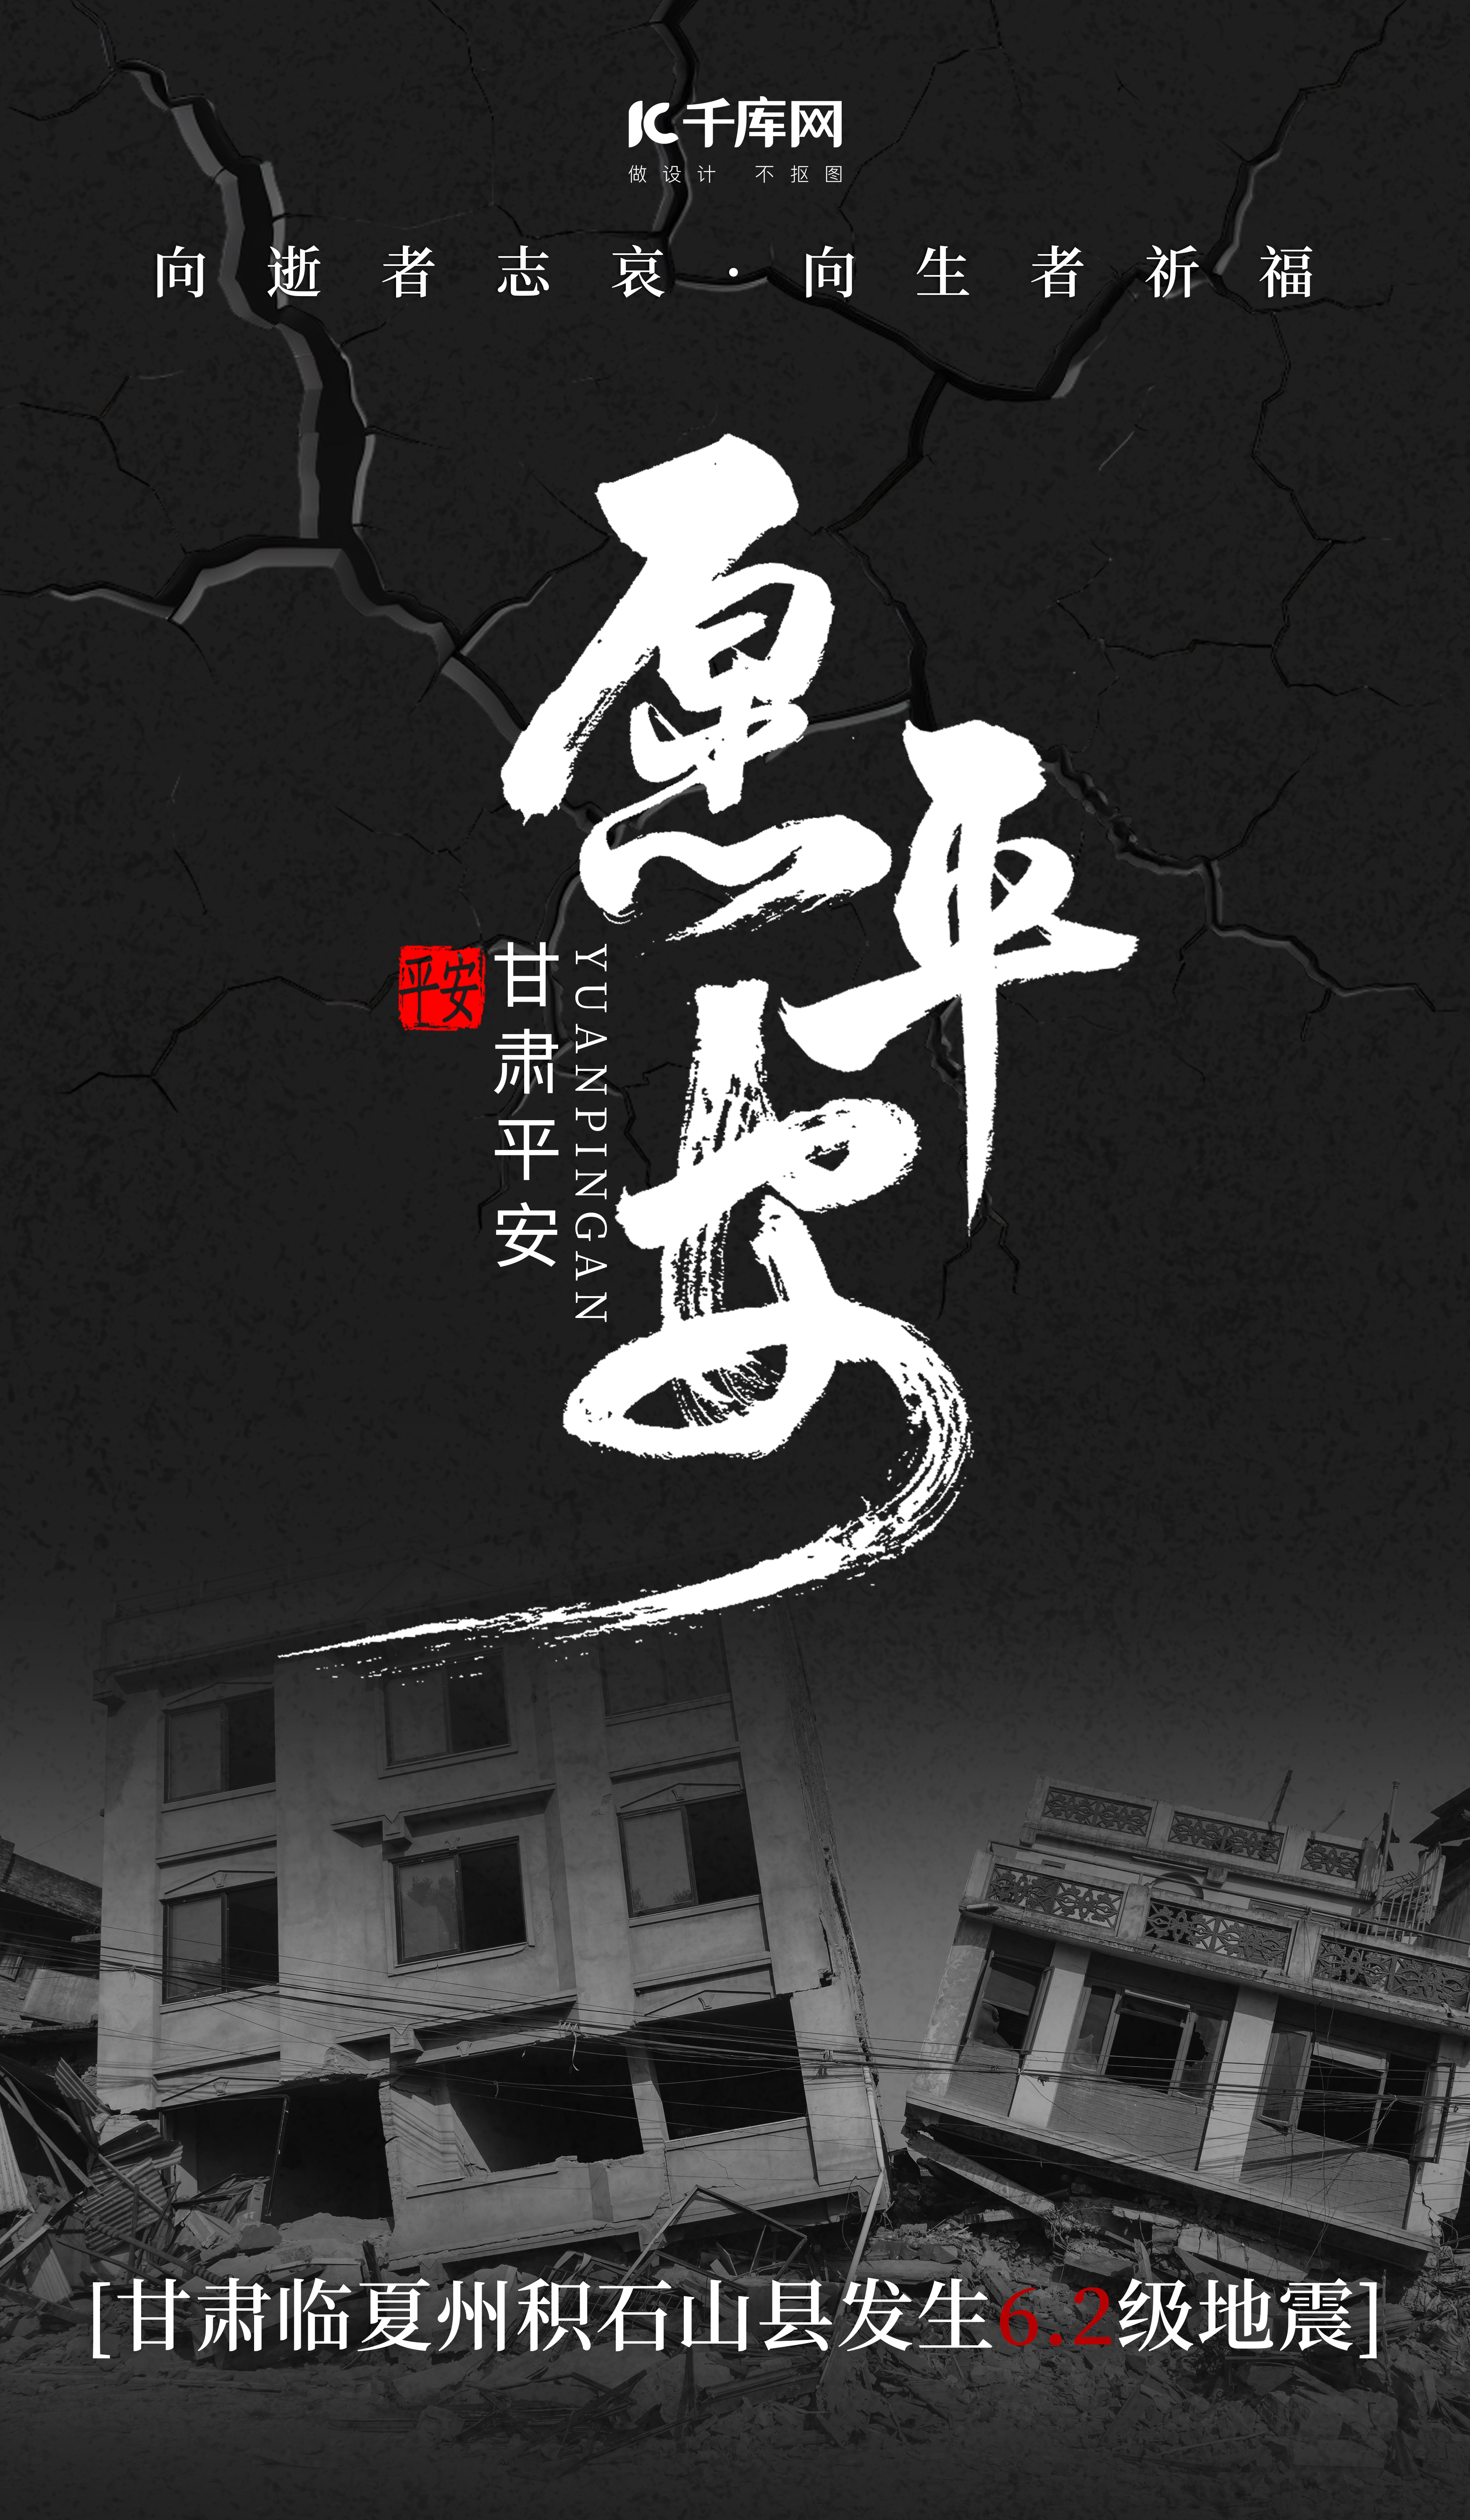 甘肃地震废墟黑色大字风广告宣传海报图片